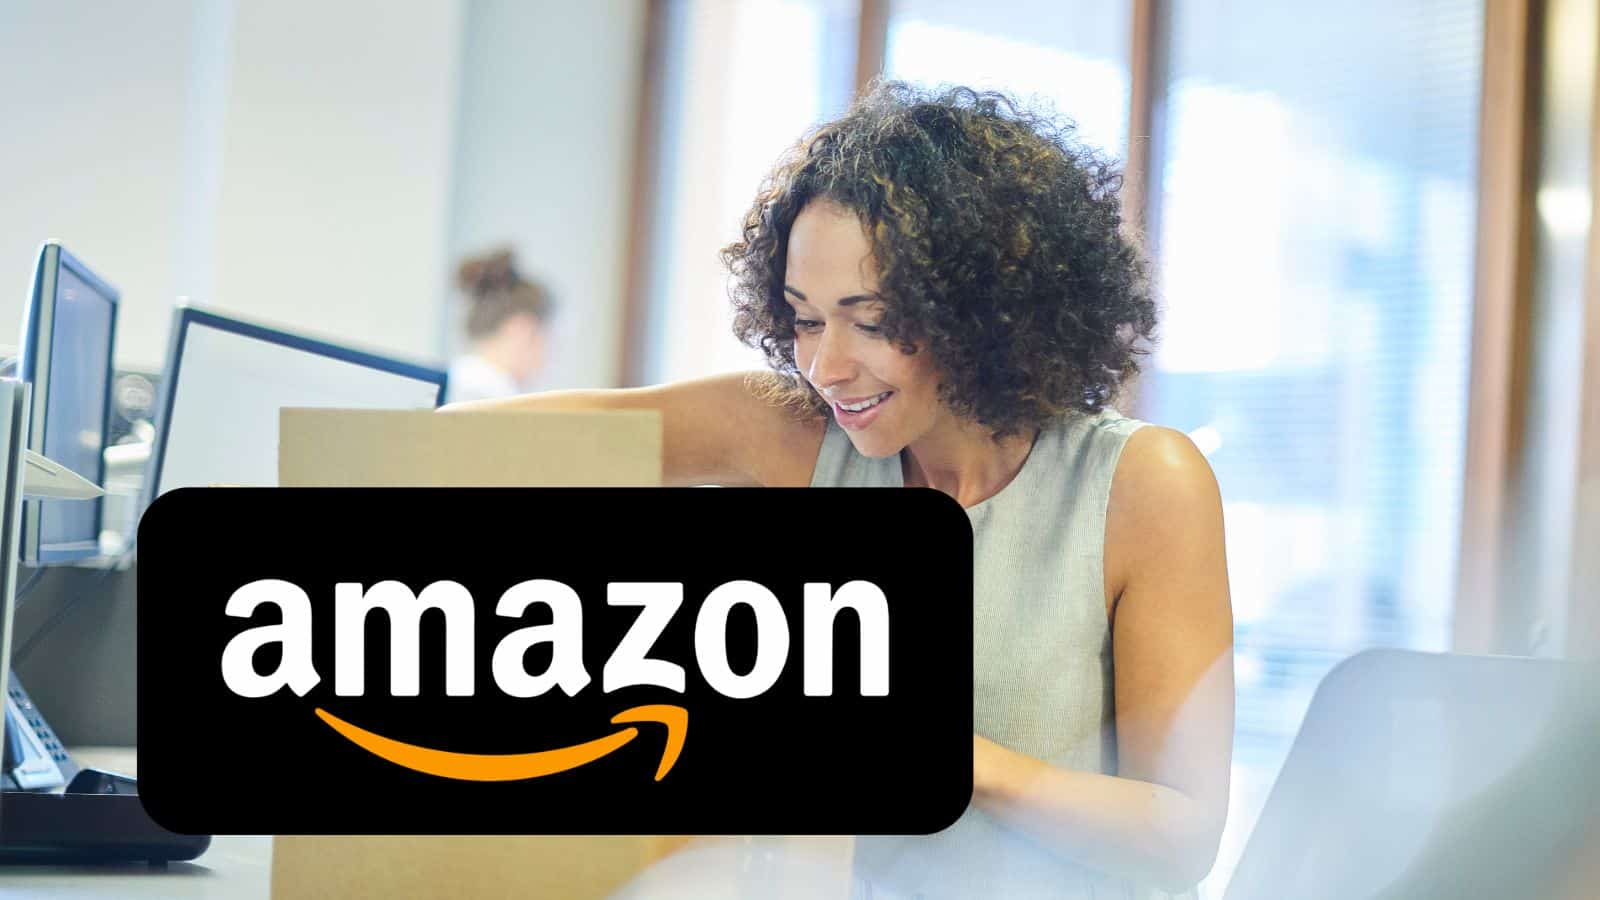 Amazon SHOCK: elenco SEGRETO di offerte gratis con prezzi al 70%